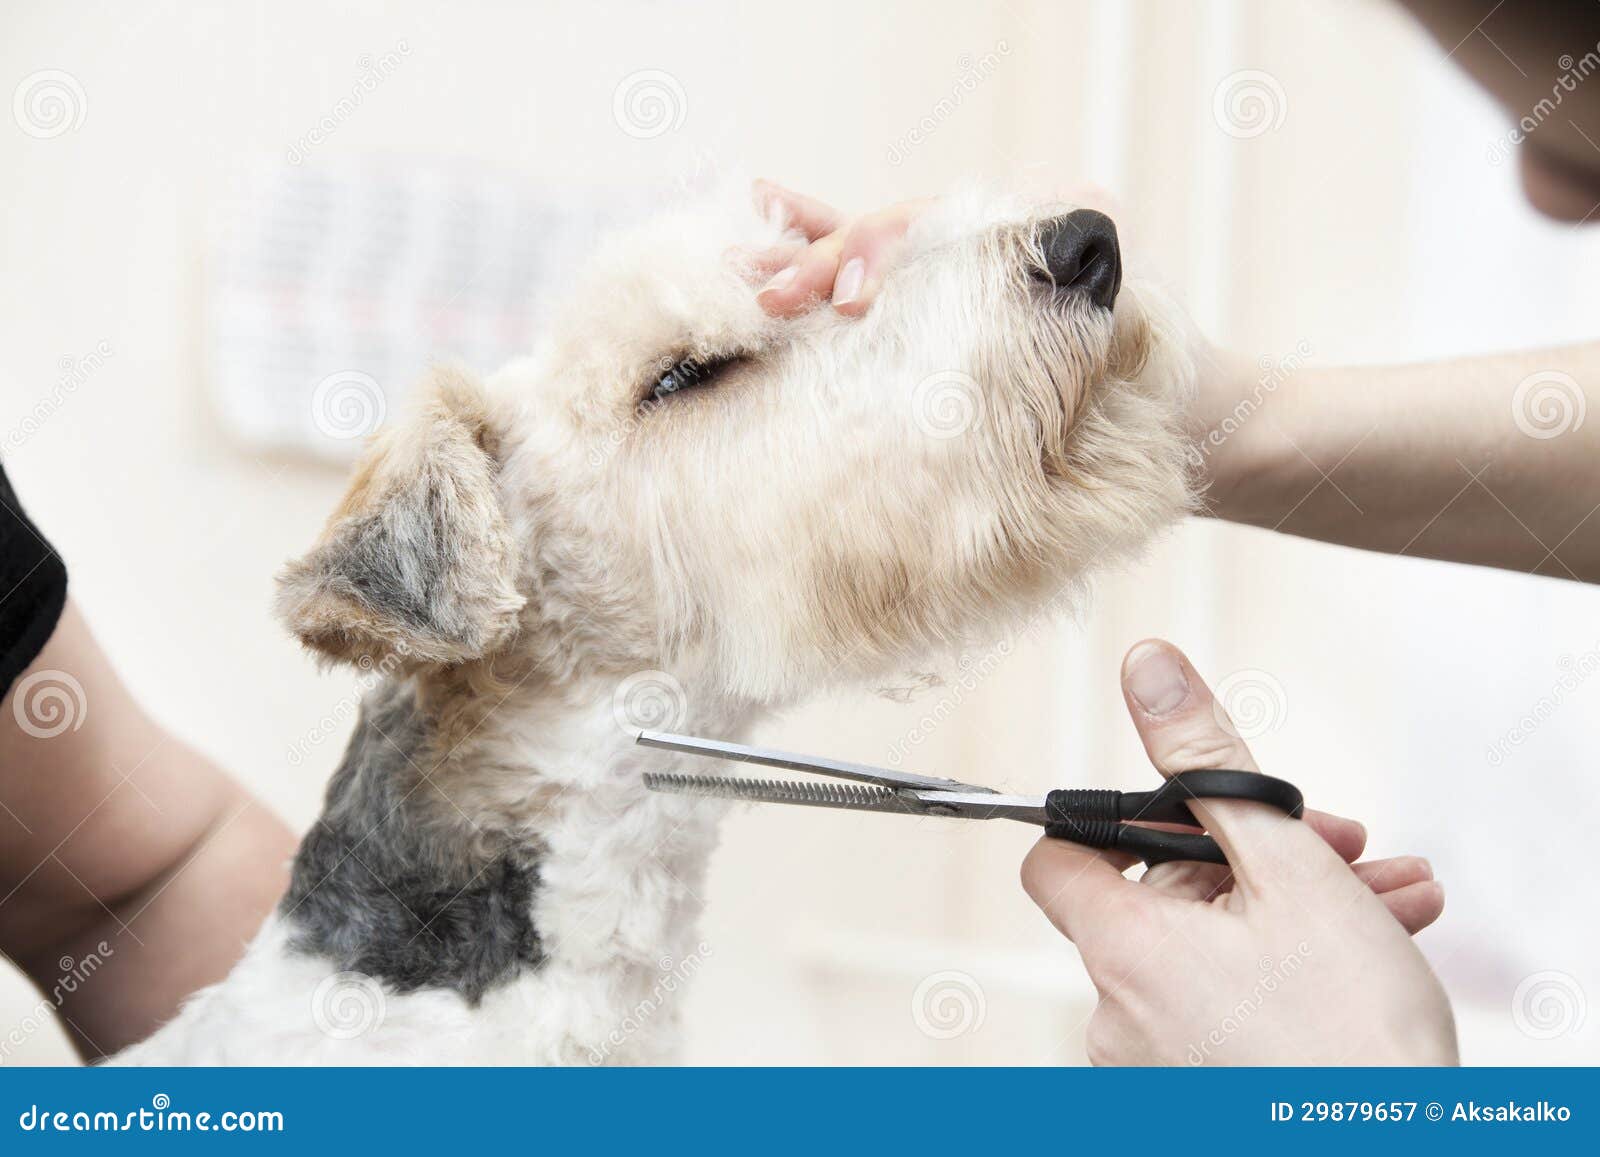 狗修饰标志. 梳剪狗头 向量例证. 插画 包括有 图标, 美发师, 剪切, 样式, 沙龙, 设计, 头发 - 217328770